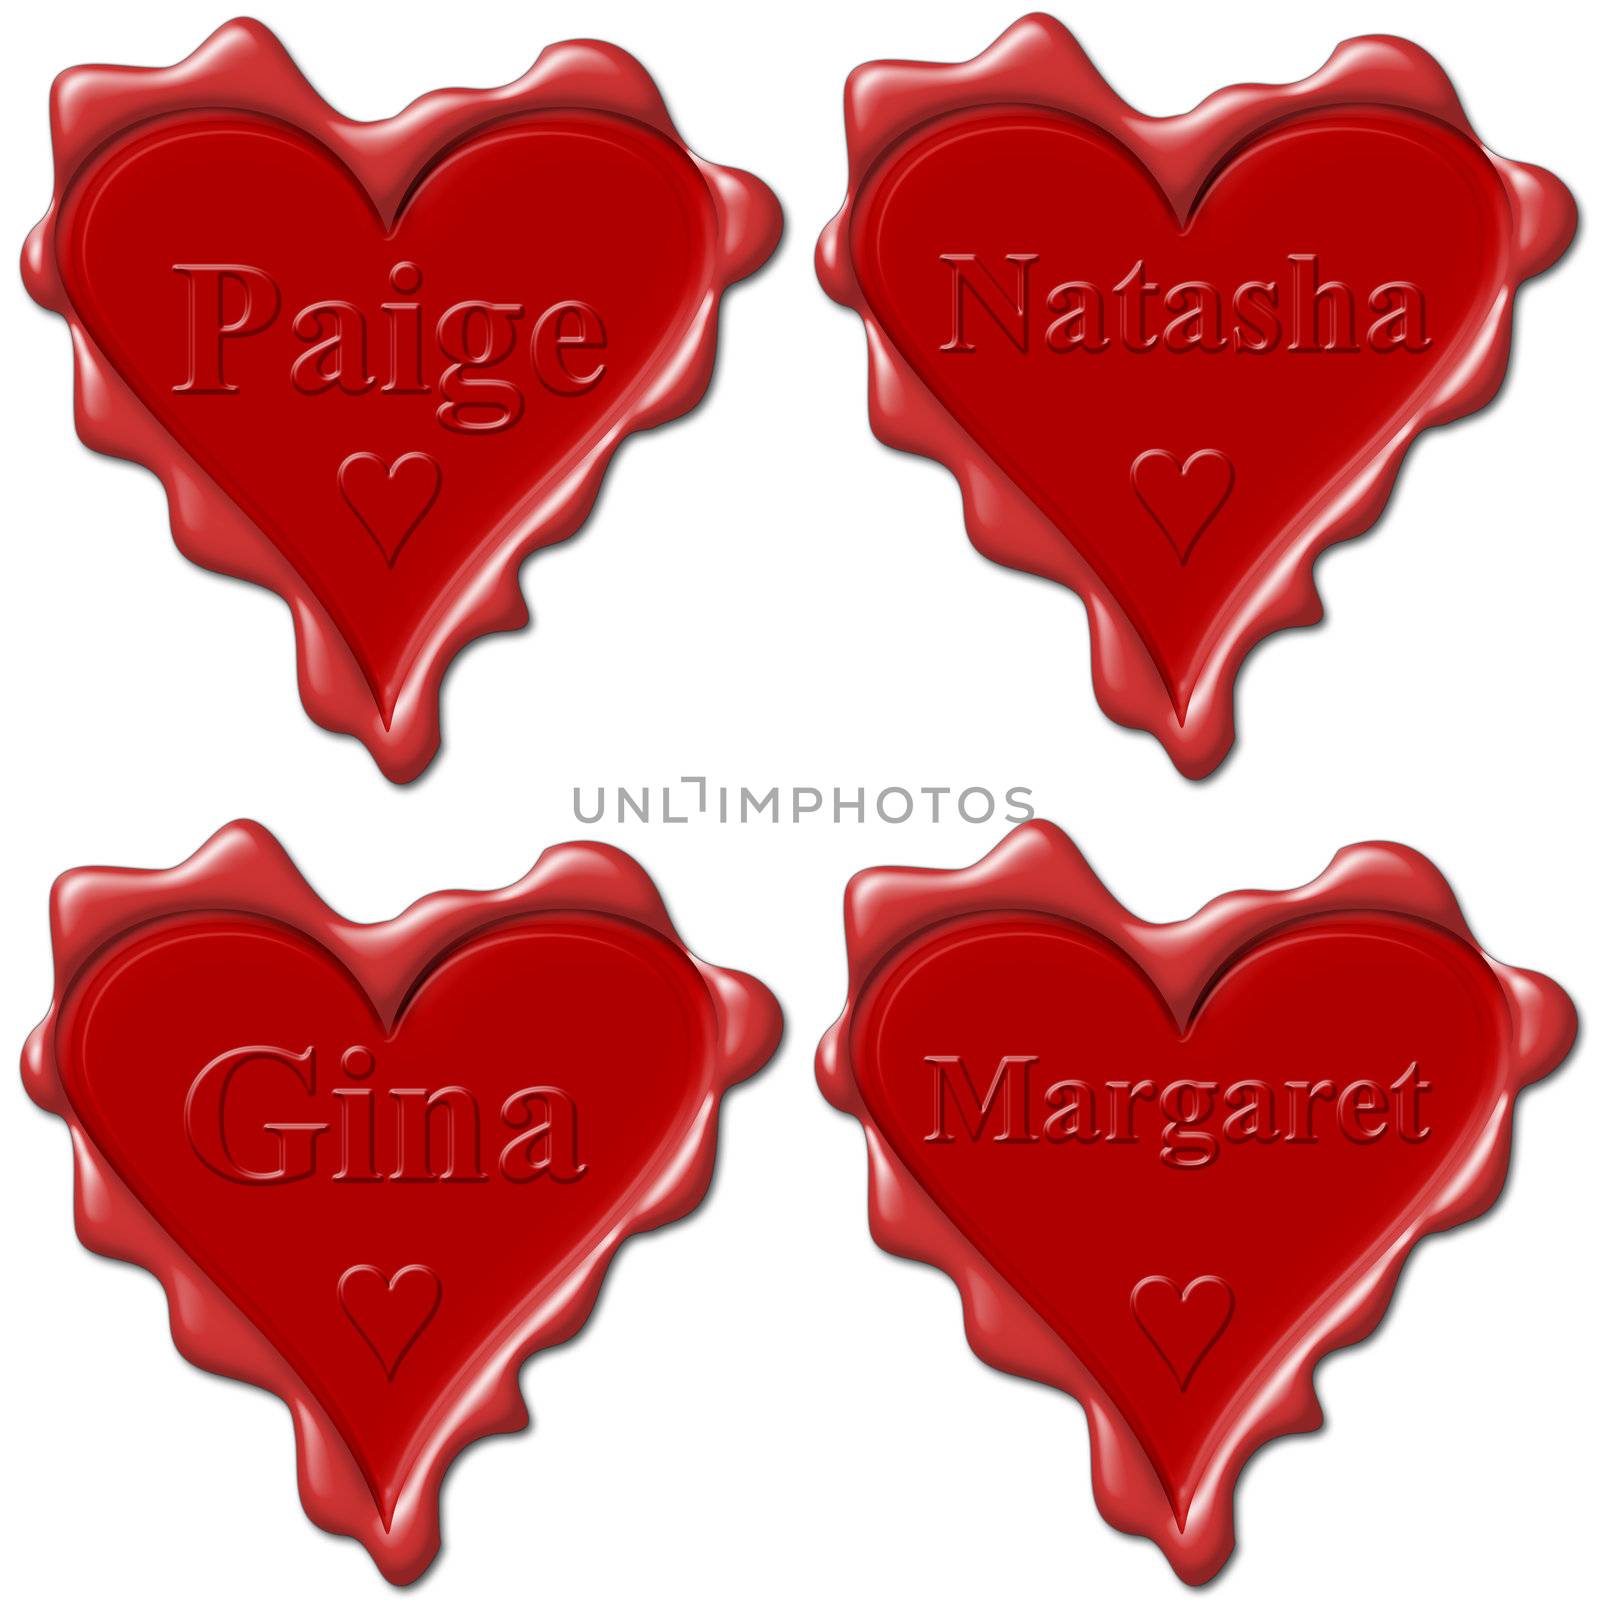 Valentine love hearts with names: Paige, Natasha, Gina, Margaret